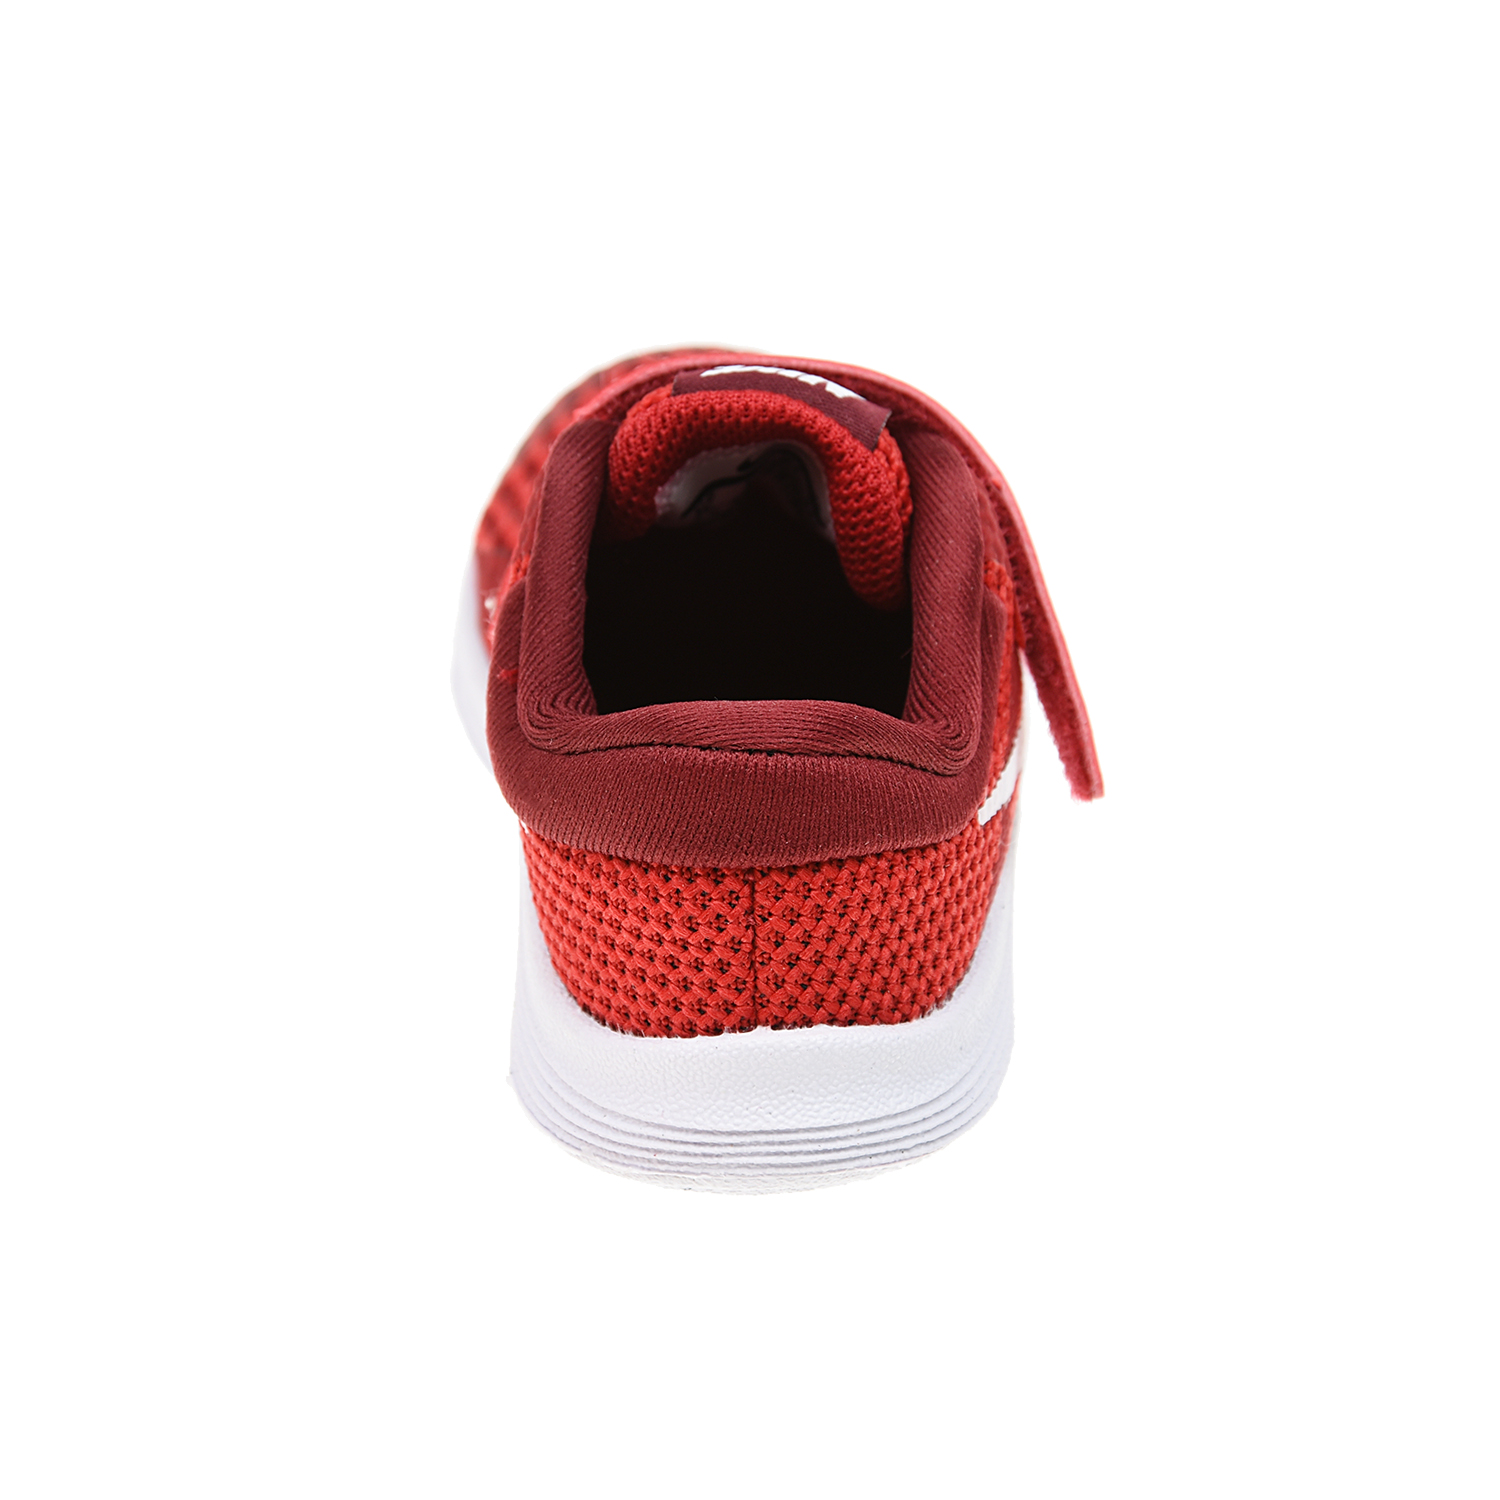 Красные кроссовки Nike Revolution 4 детские - фото 3